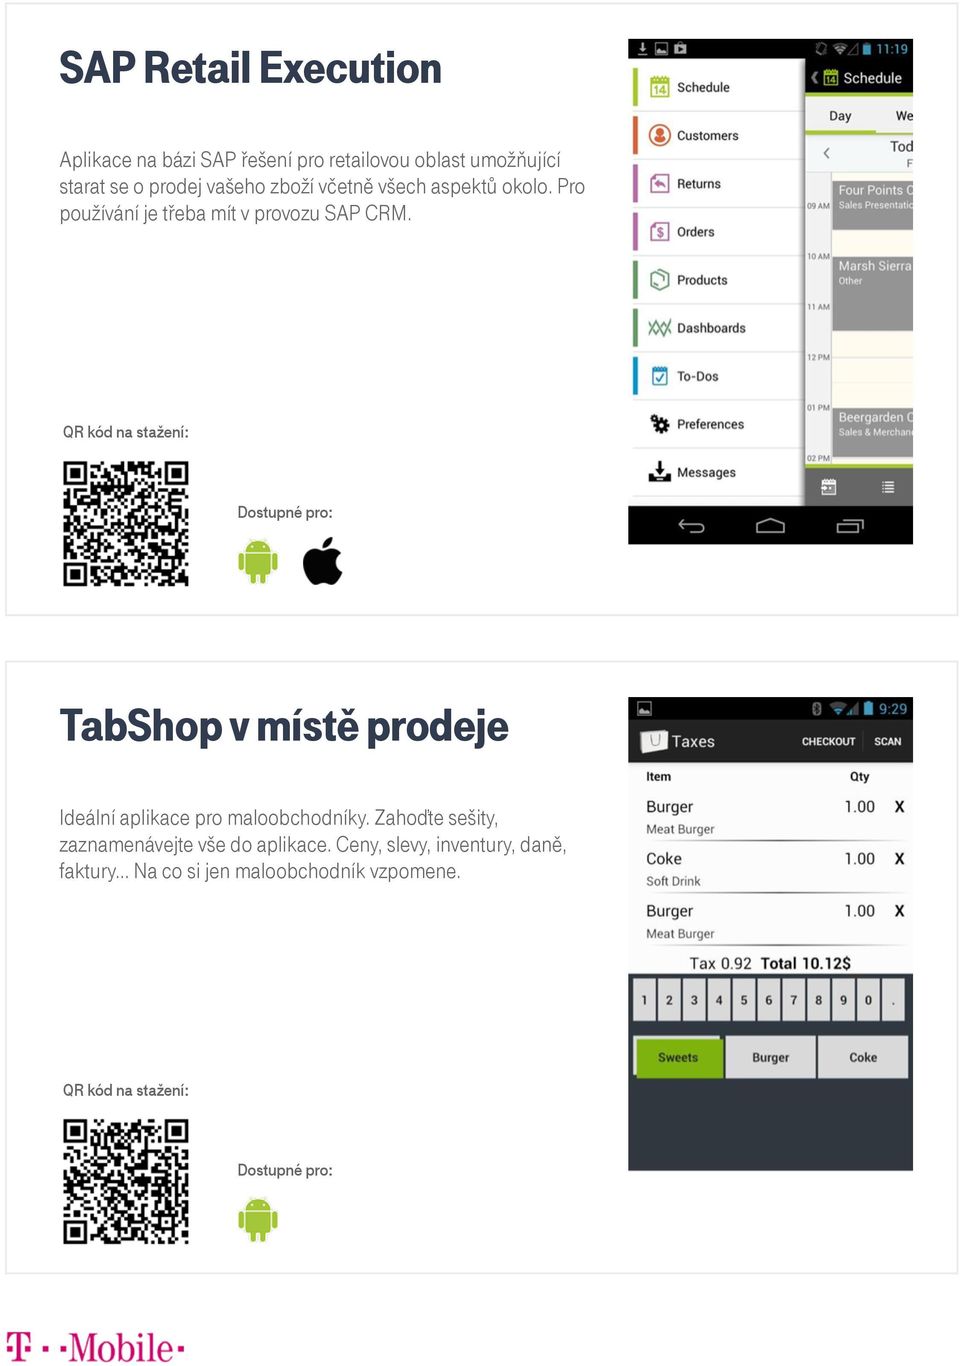 TabShop v místě prodeje Ideální aplikace pro maloobchodníky.